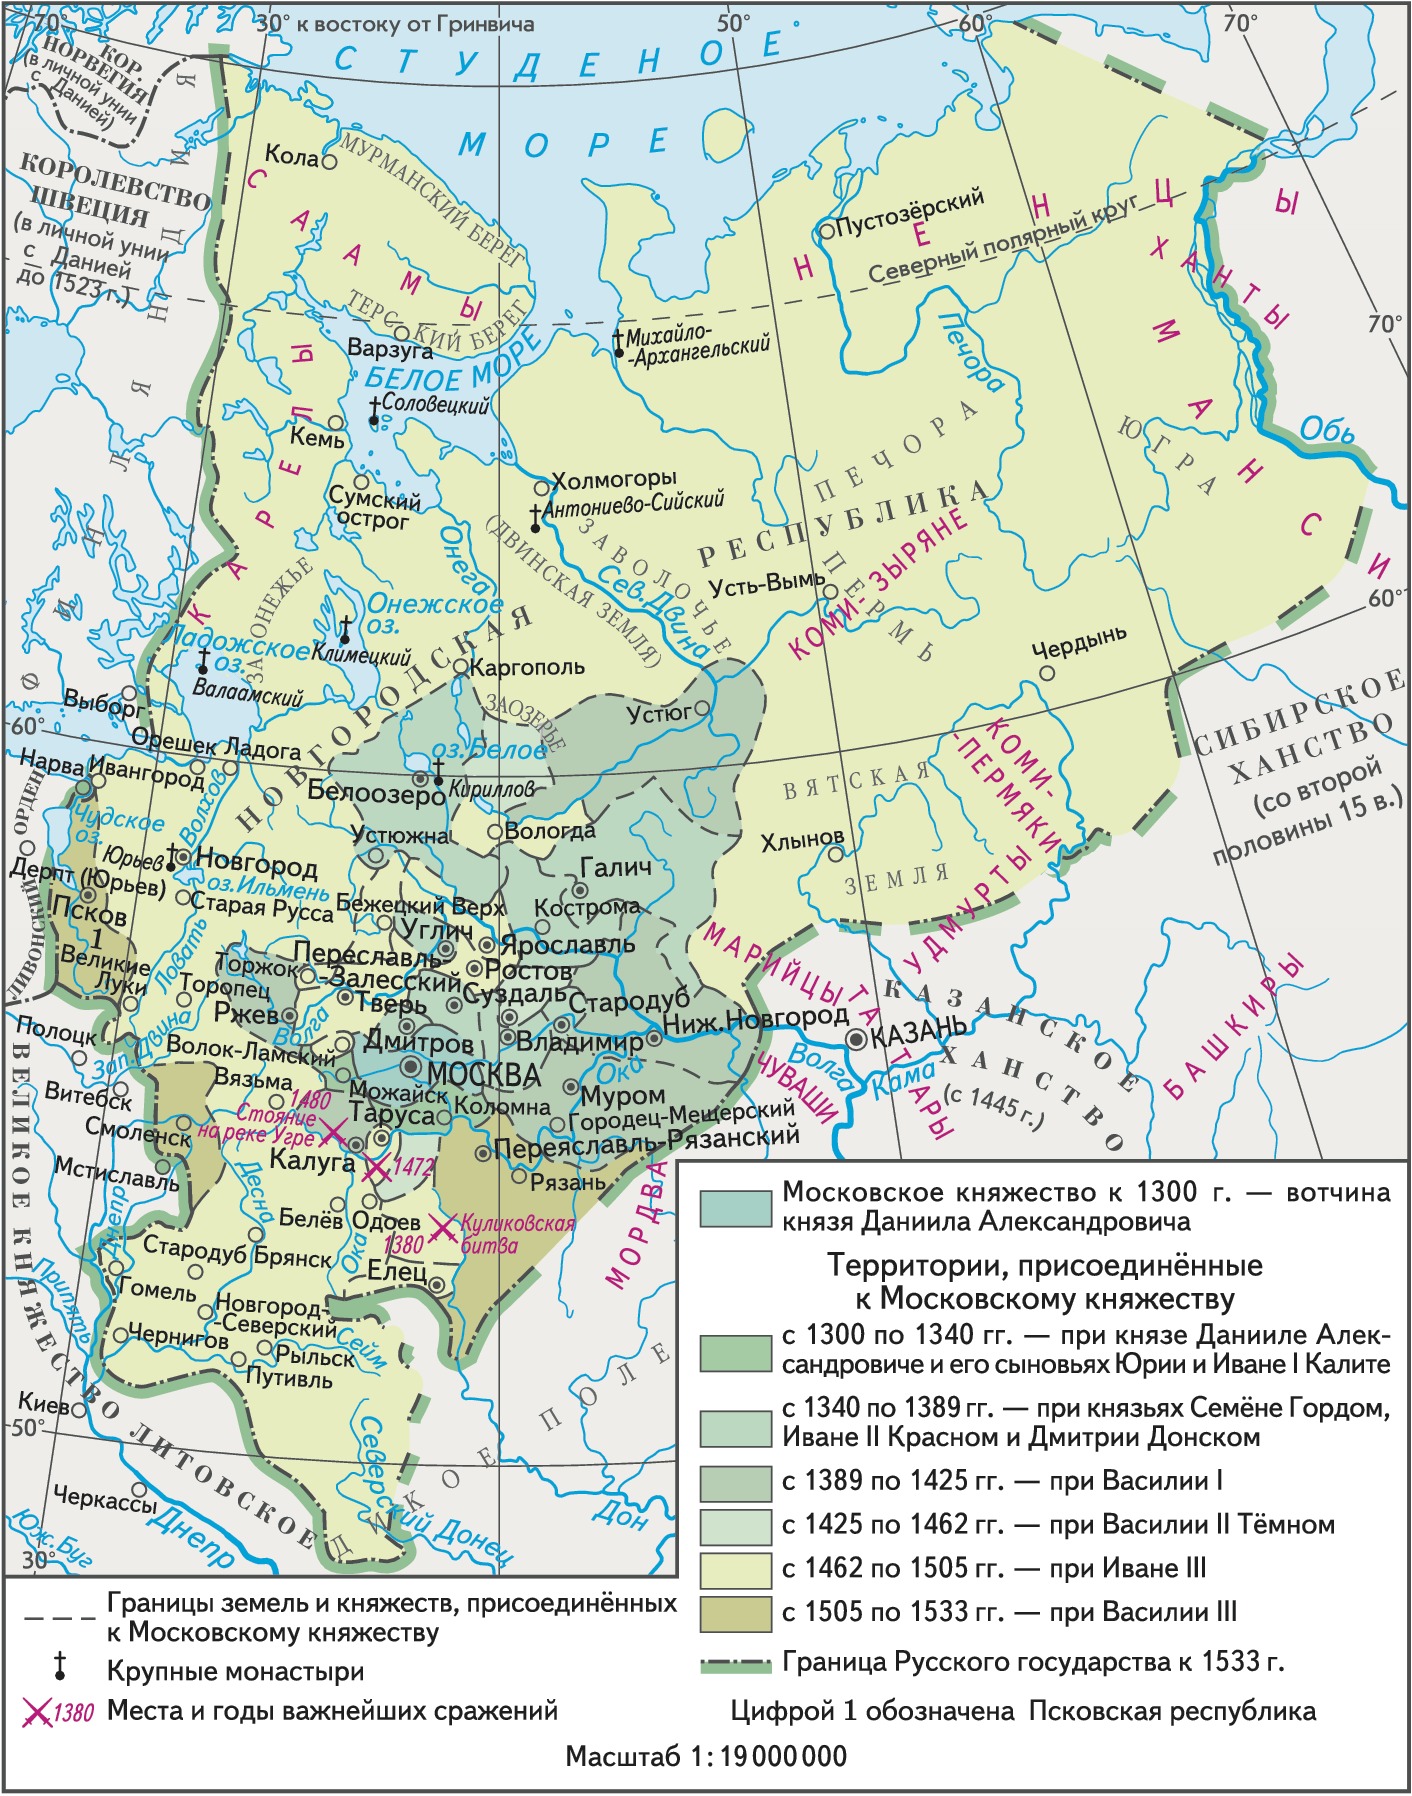 Великого Московского княжества XVI века